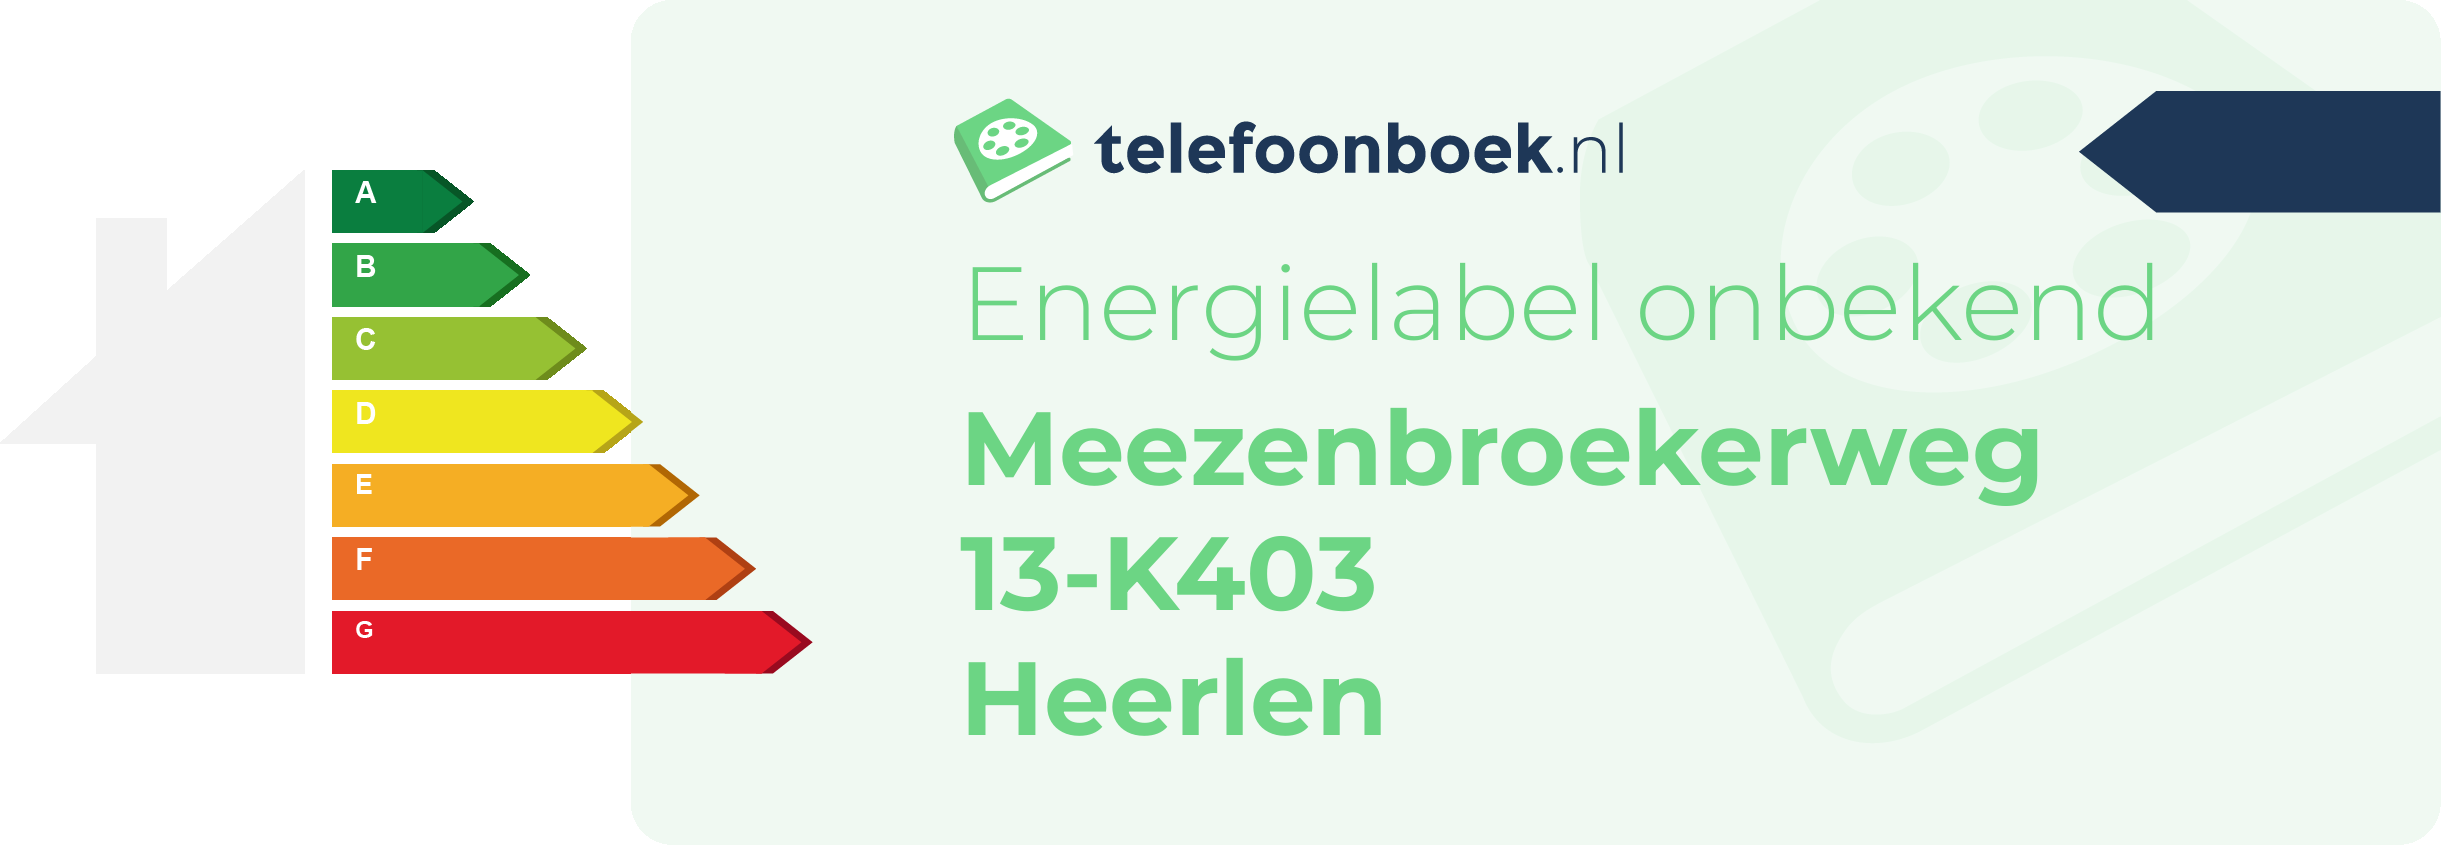 Energielabel Meezenbroekerweg 13-K403 Heerlen